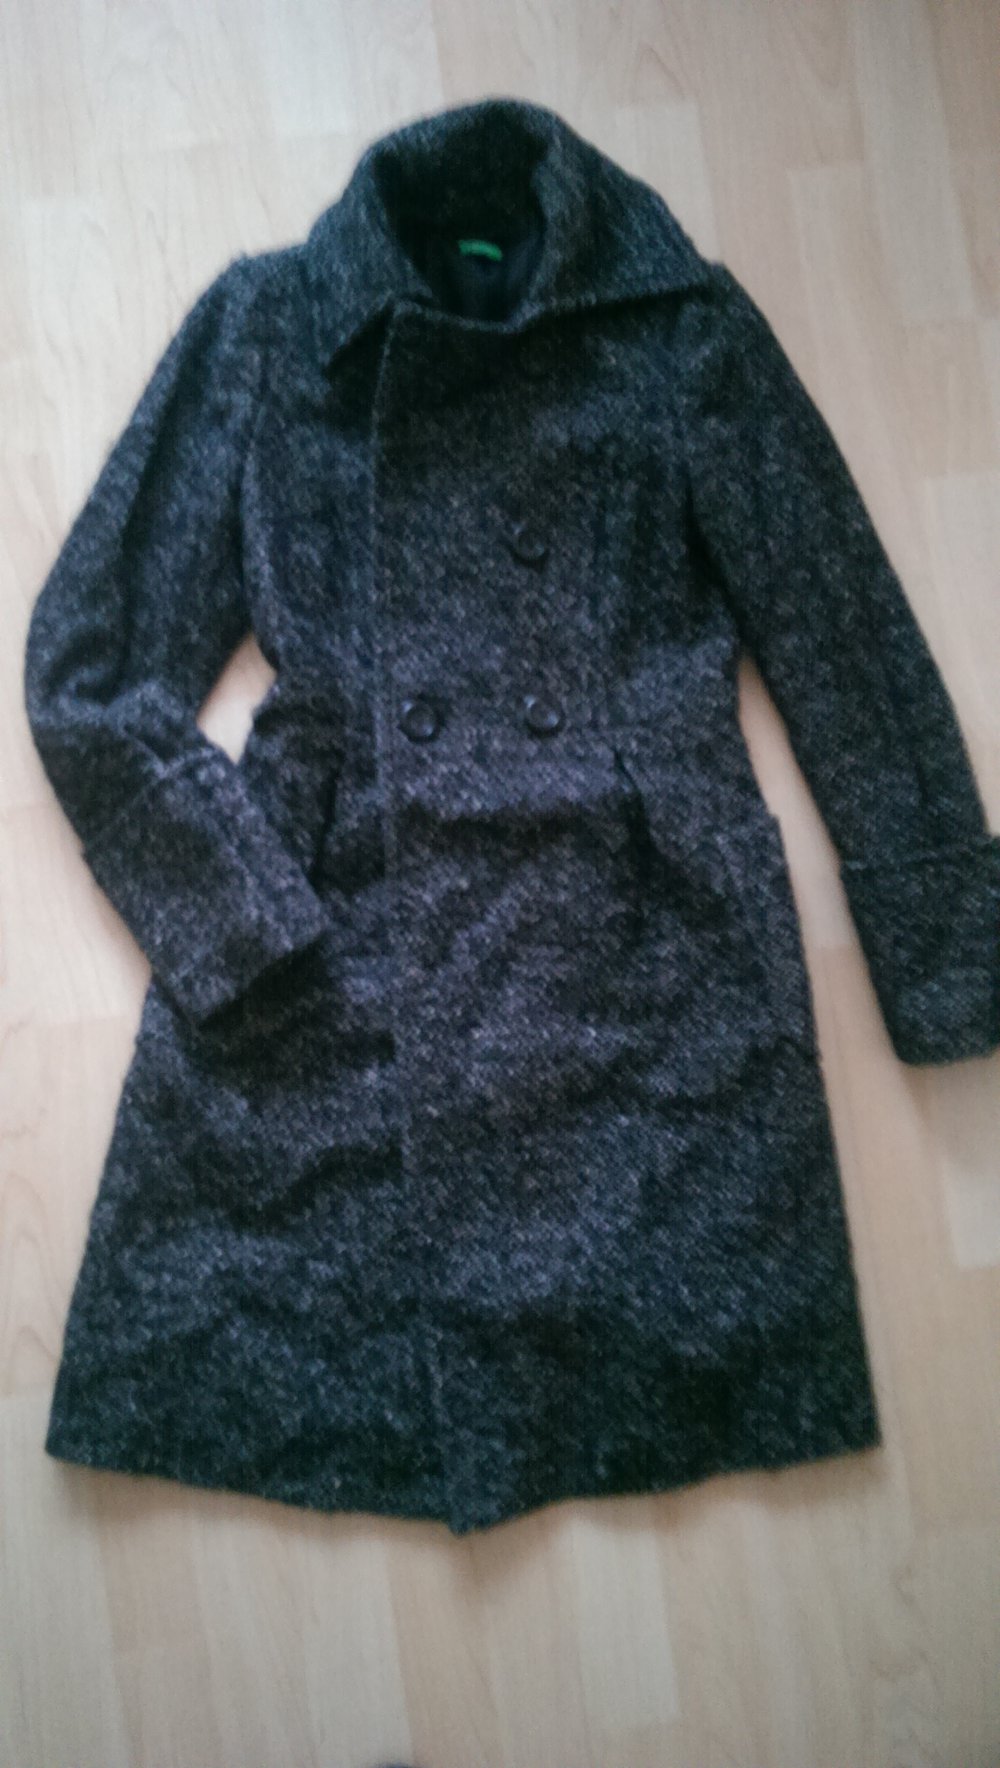 Benetton - Mantel aus Wolle in schwarz/grau, Größe 32-34, XS